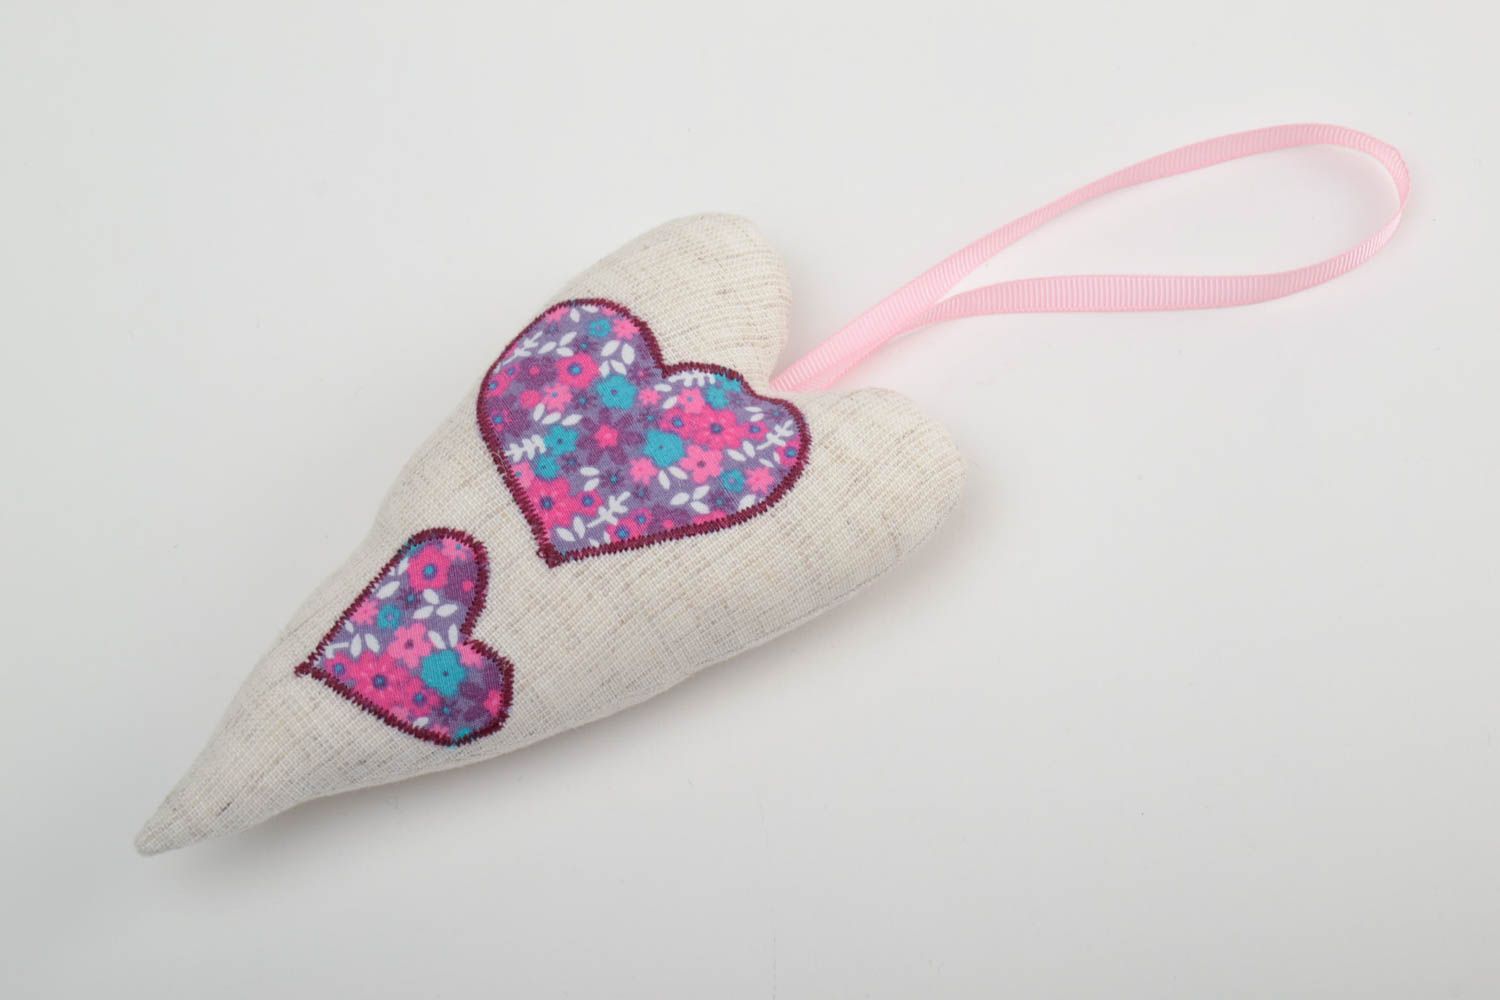 Интерьерная подвеска сердце из натуральных тканей на розовой ленте хэнд мэйд фото 2